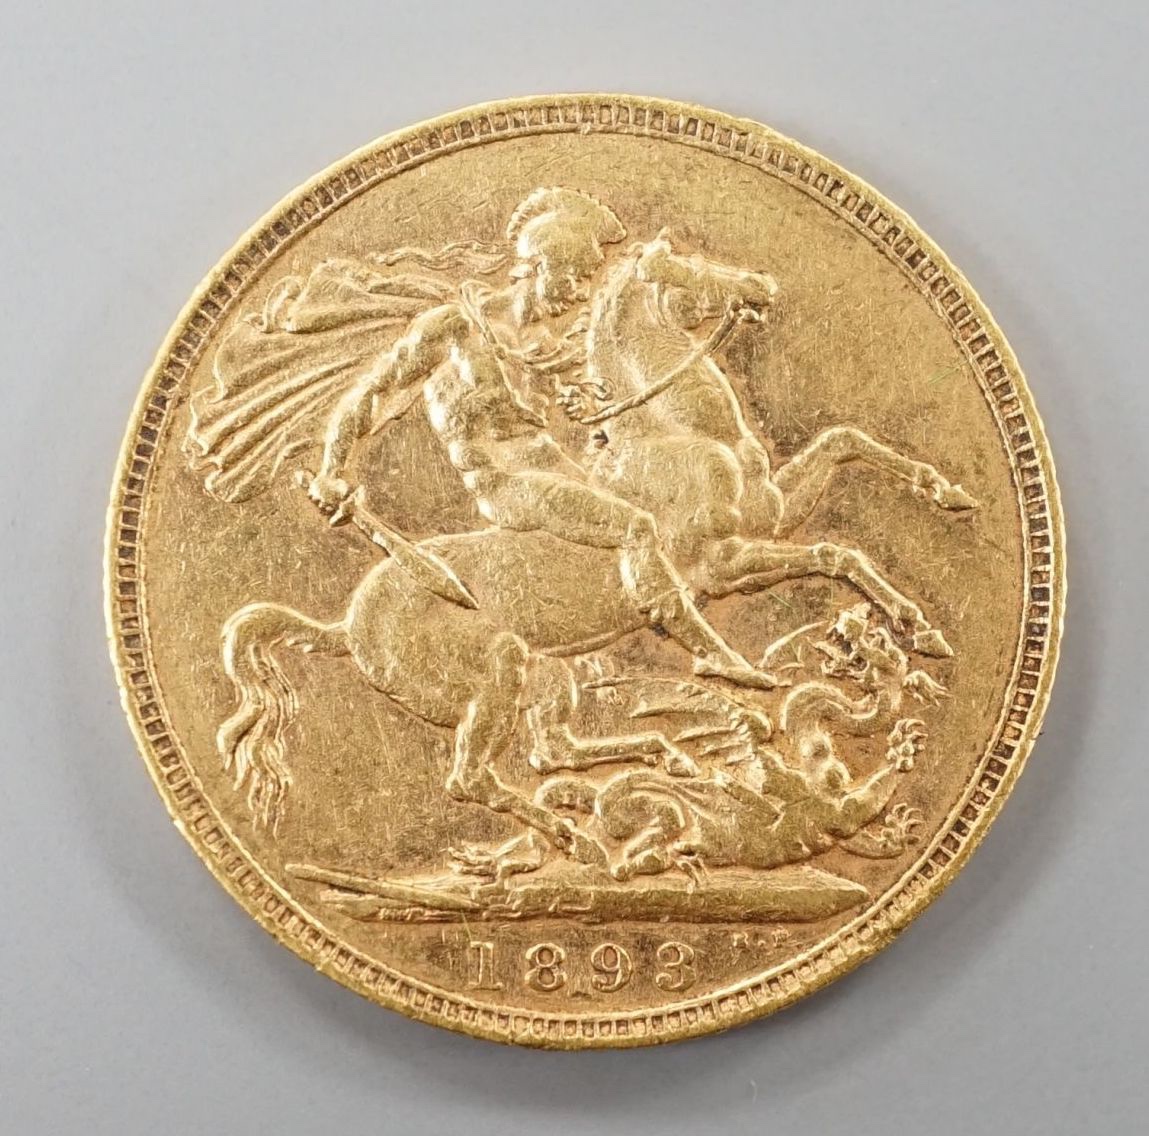 A Victoria 1893 gold sovereign.